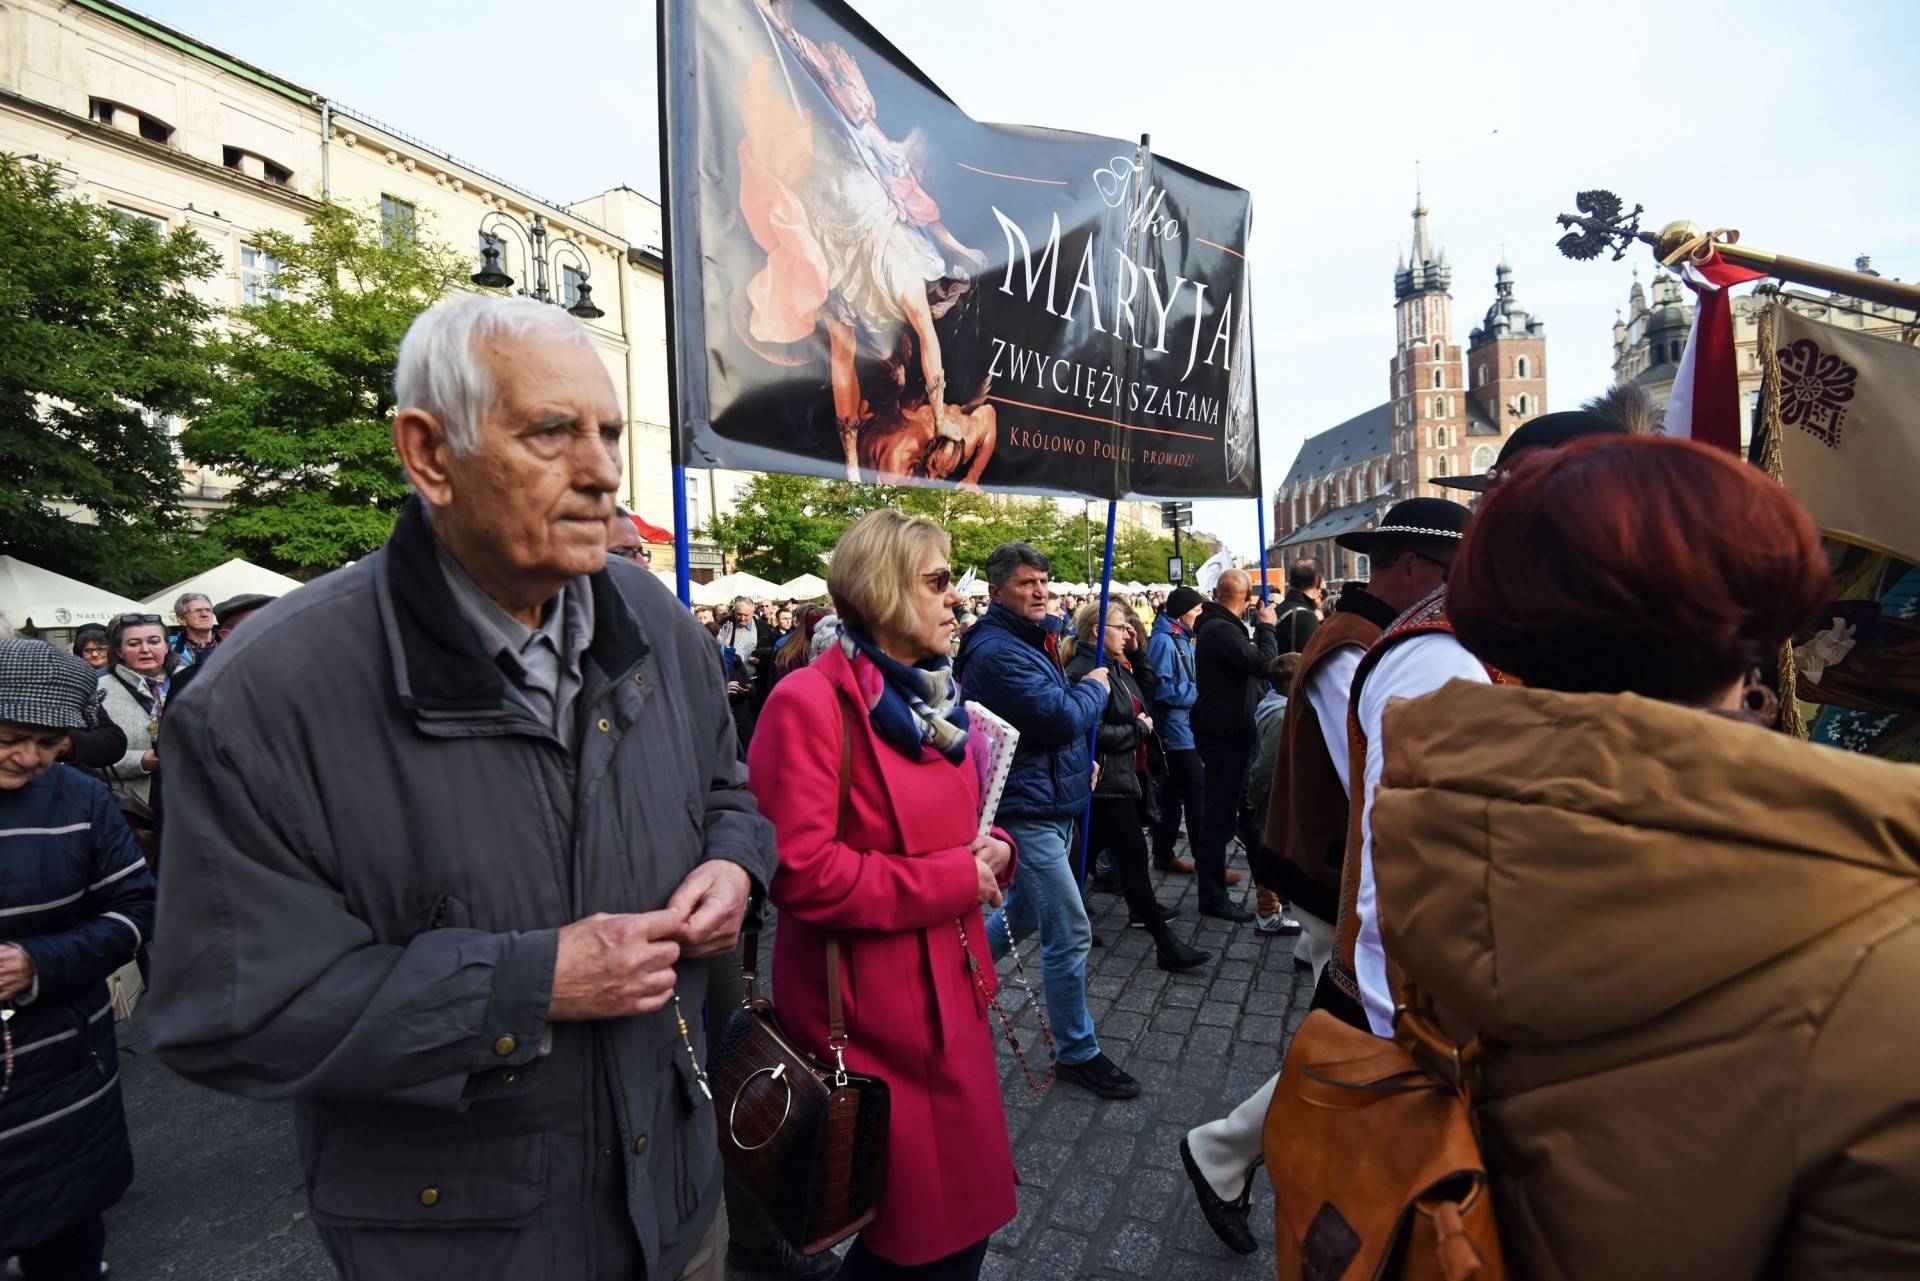 "Męski różaniec" zorganizował procesję za Polskę. Szli nie tylko mężczyźni